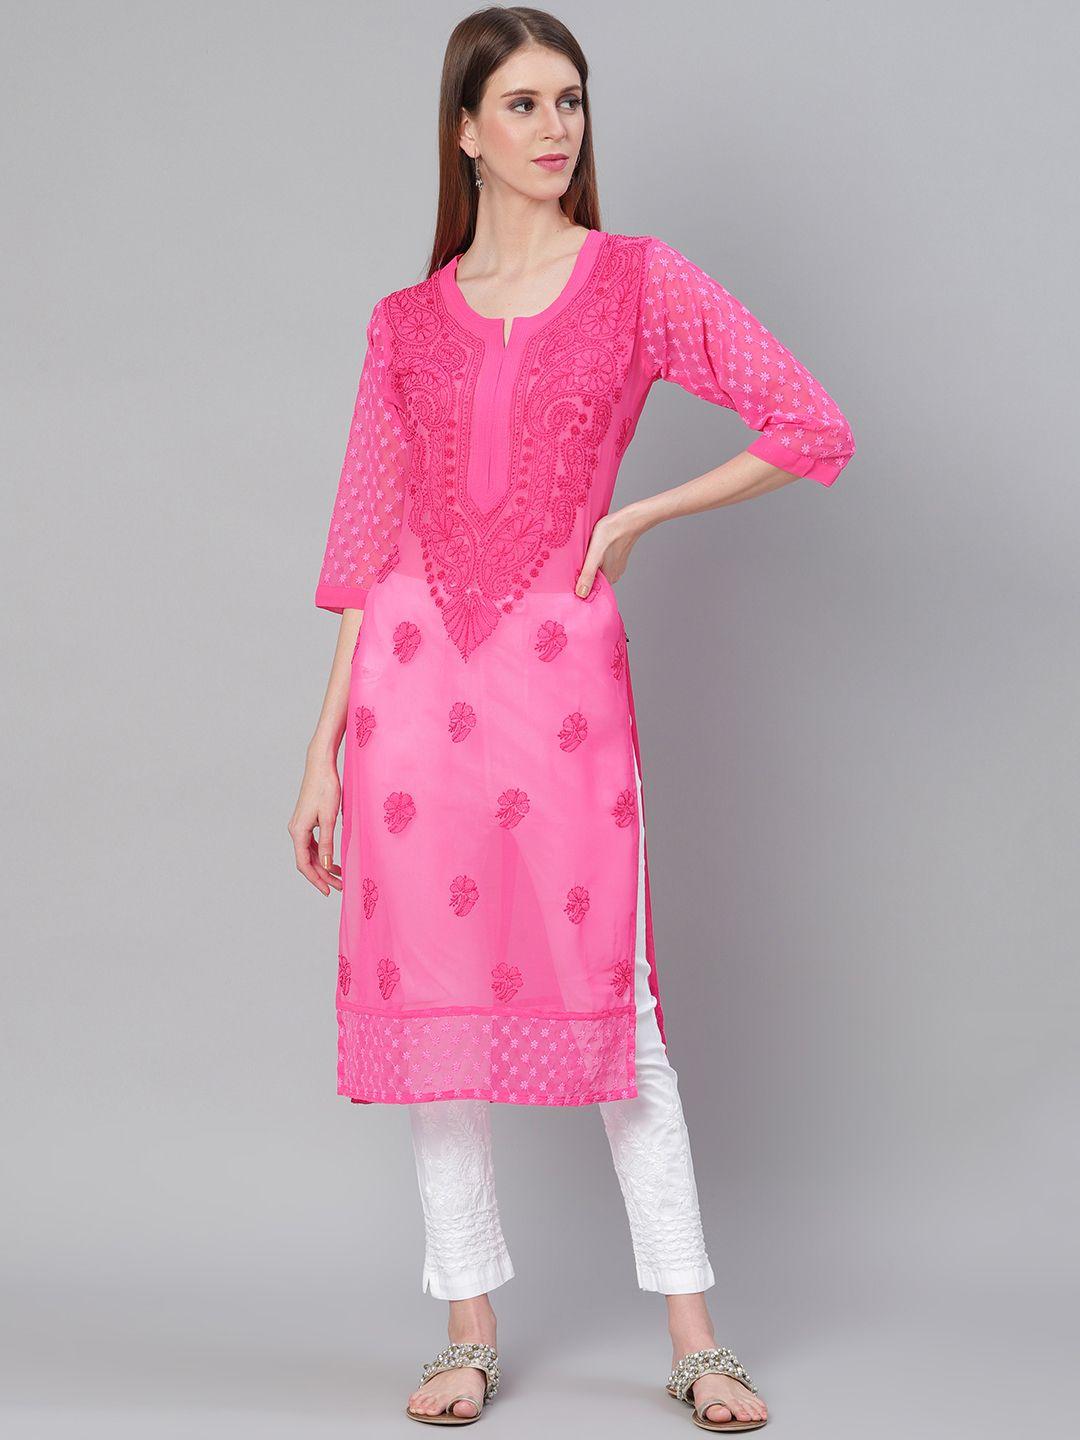 saadgi women pink & white chikankari embroidered handloom kurta with trousers